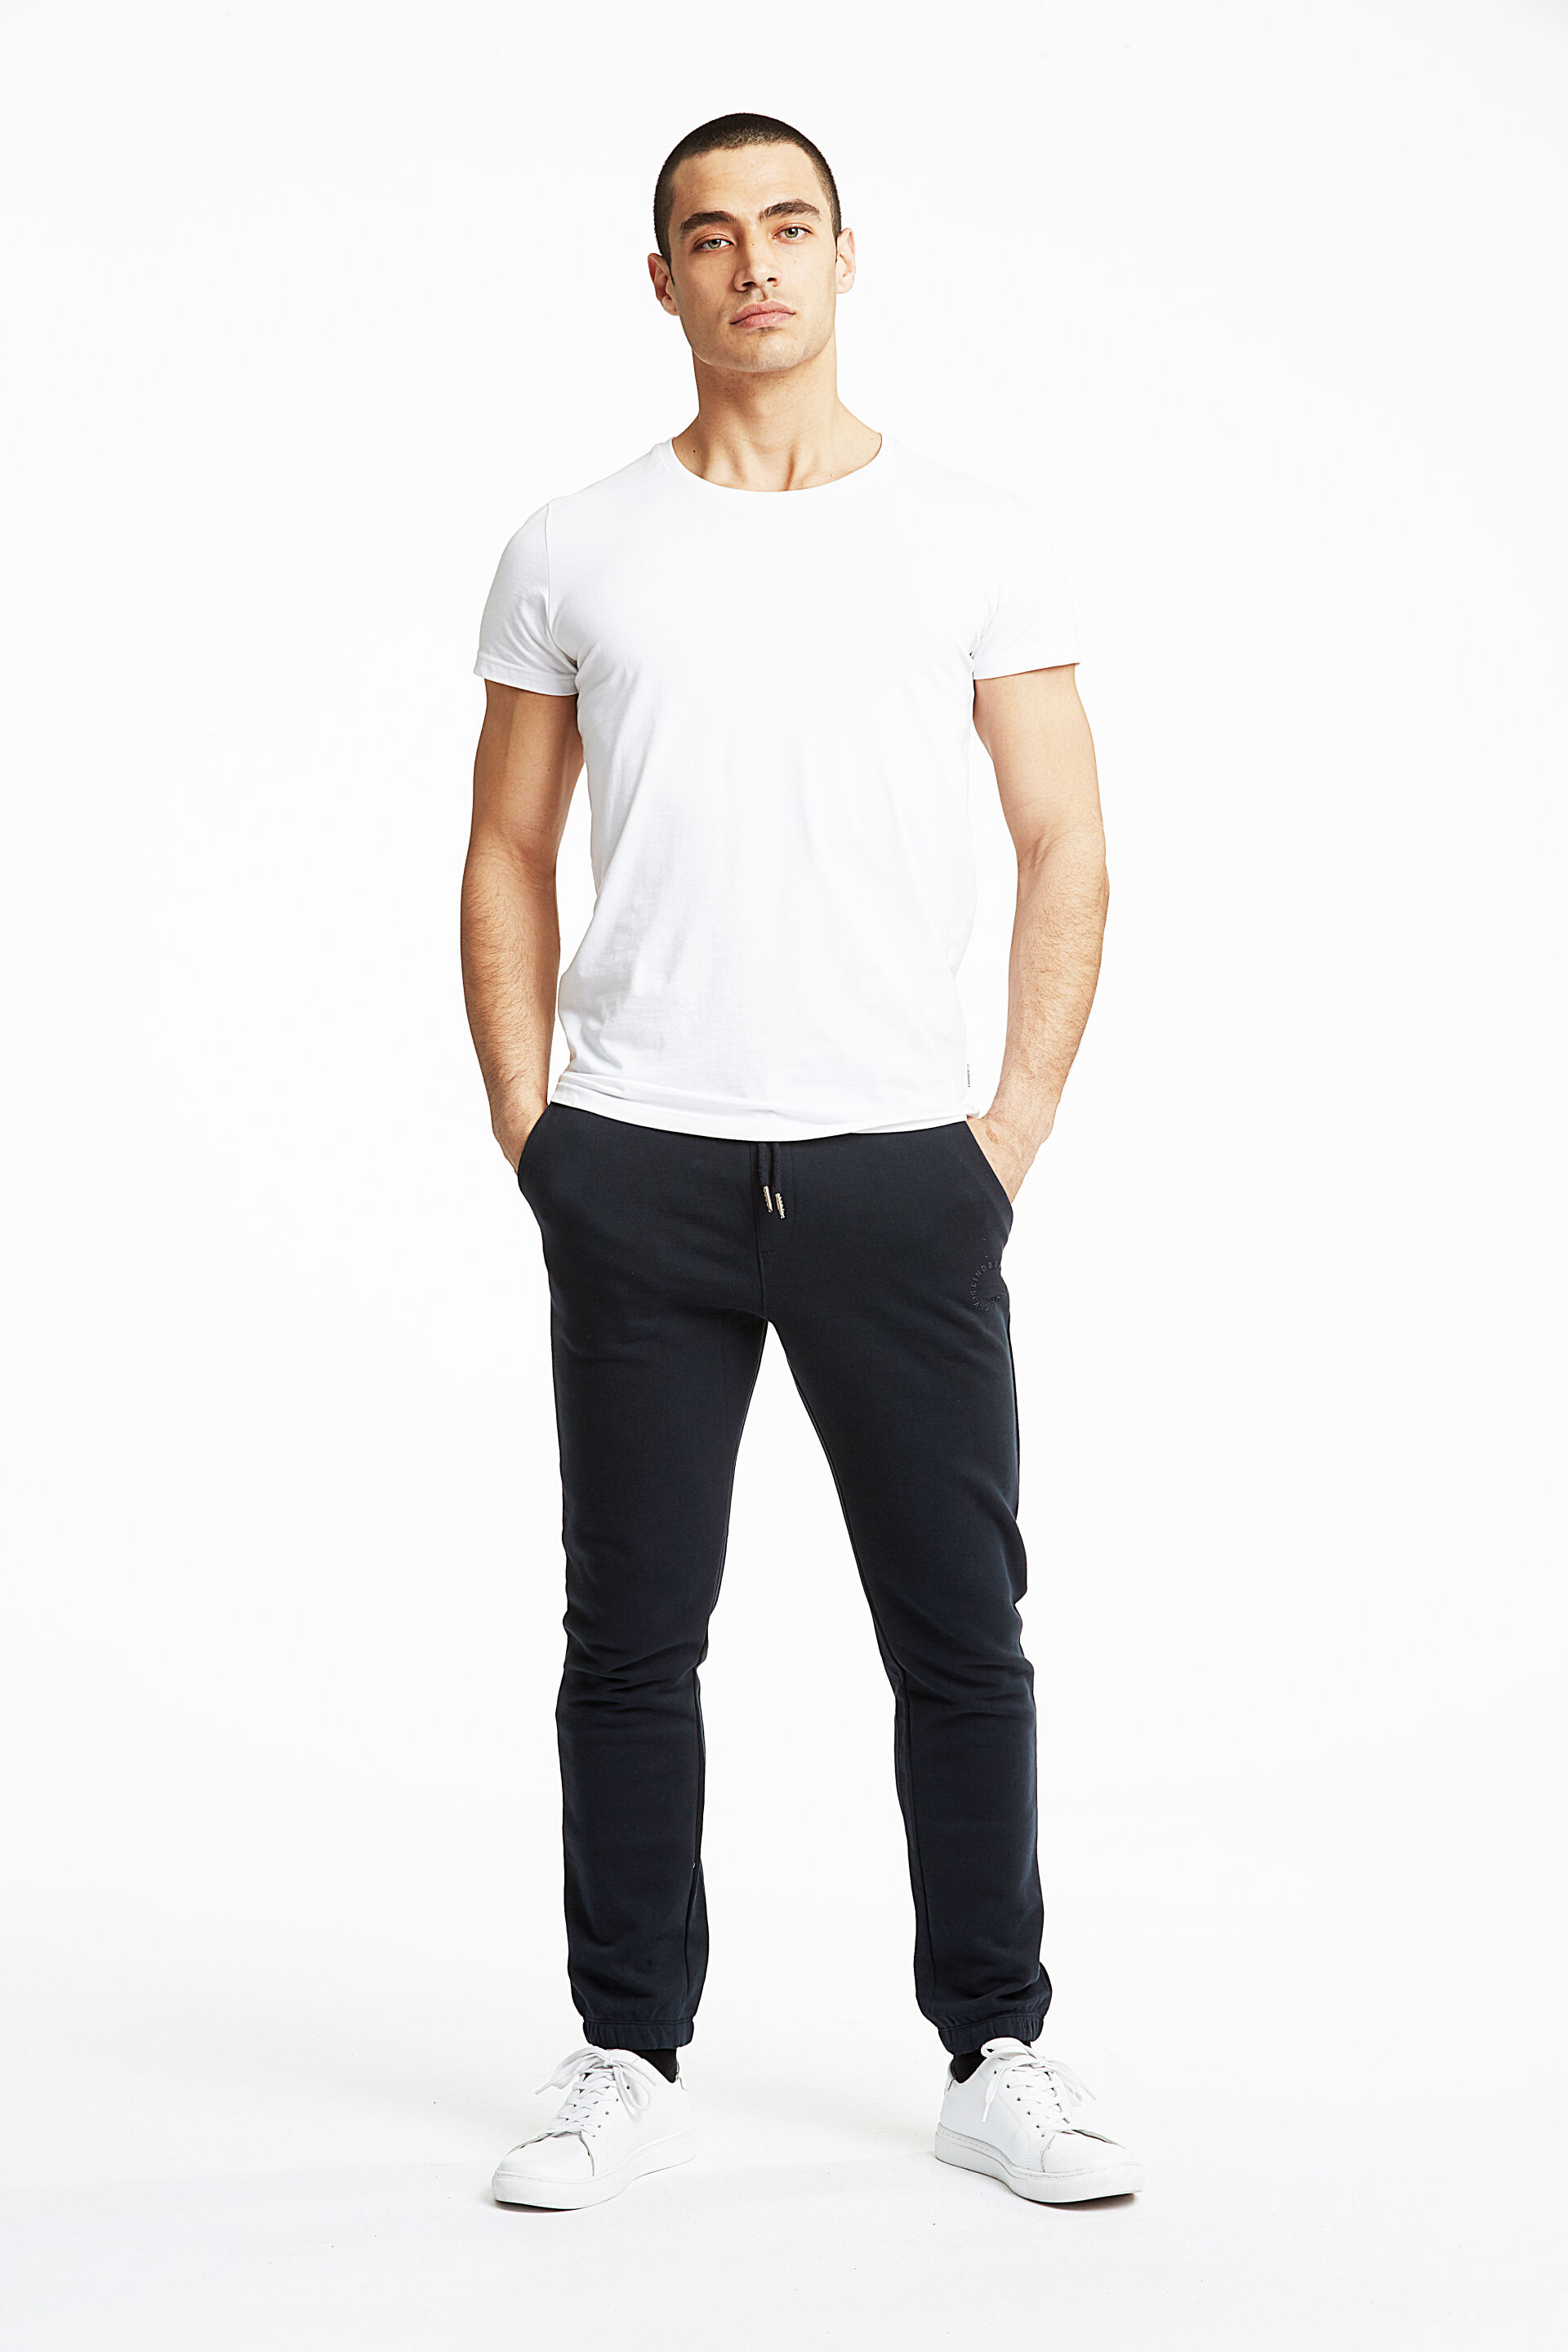 Model i hvid Lindbergh T-shirt og sort sweatpants